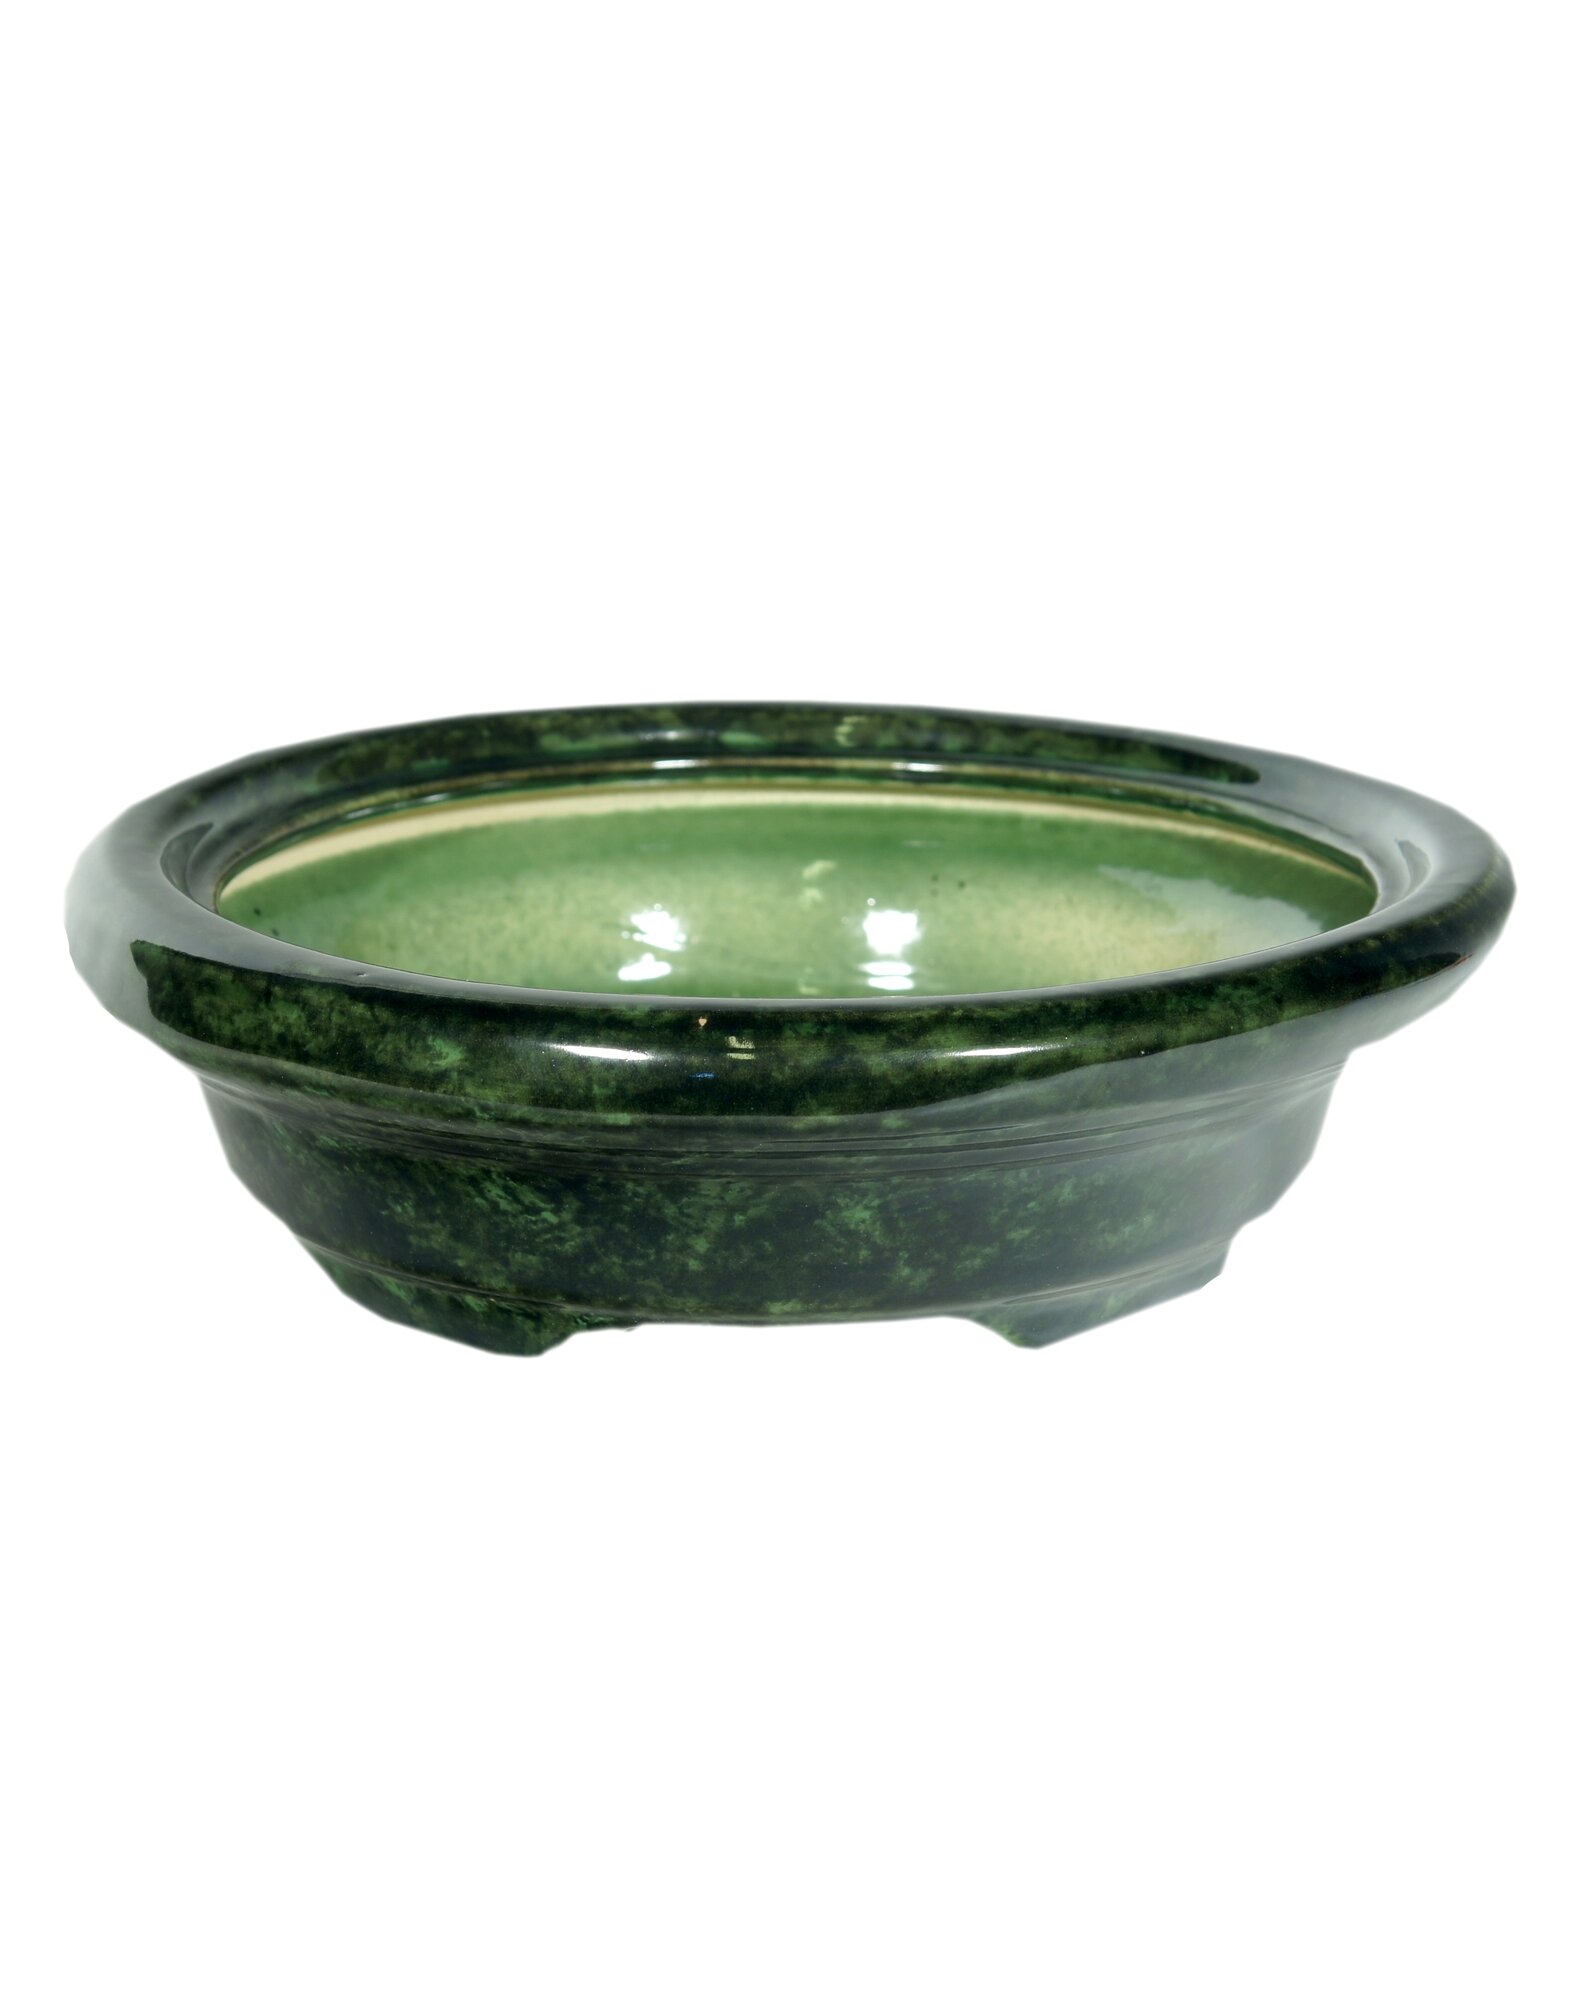 Кашпо для бонсай кактусов керамика кактусник кактусница Бонсайница №5 круглое зеленое